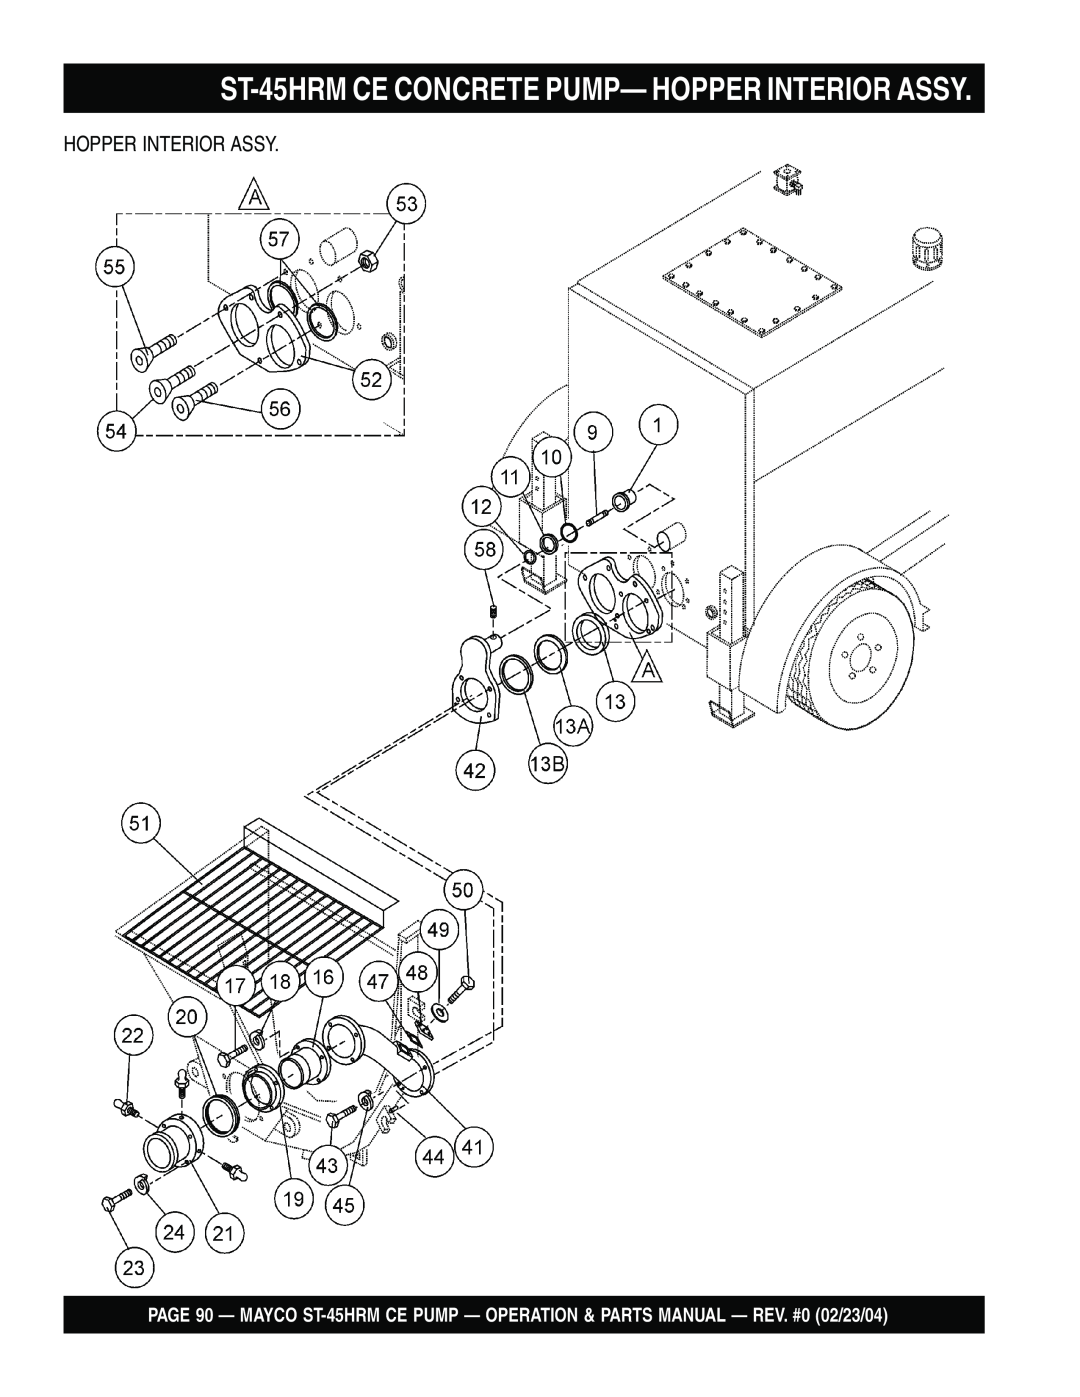 Multiquip ST-45HRM CE manual ST-45HRMCE CONCRETE PUMP— HOPPER INTERIOR ASSY, Hopper Interior Assy 